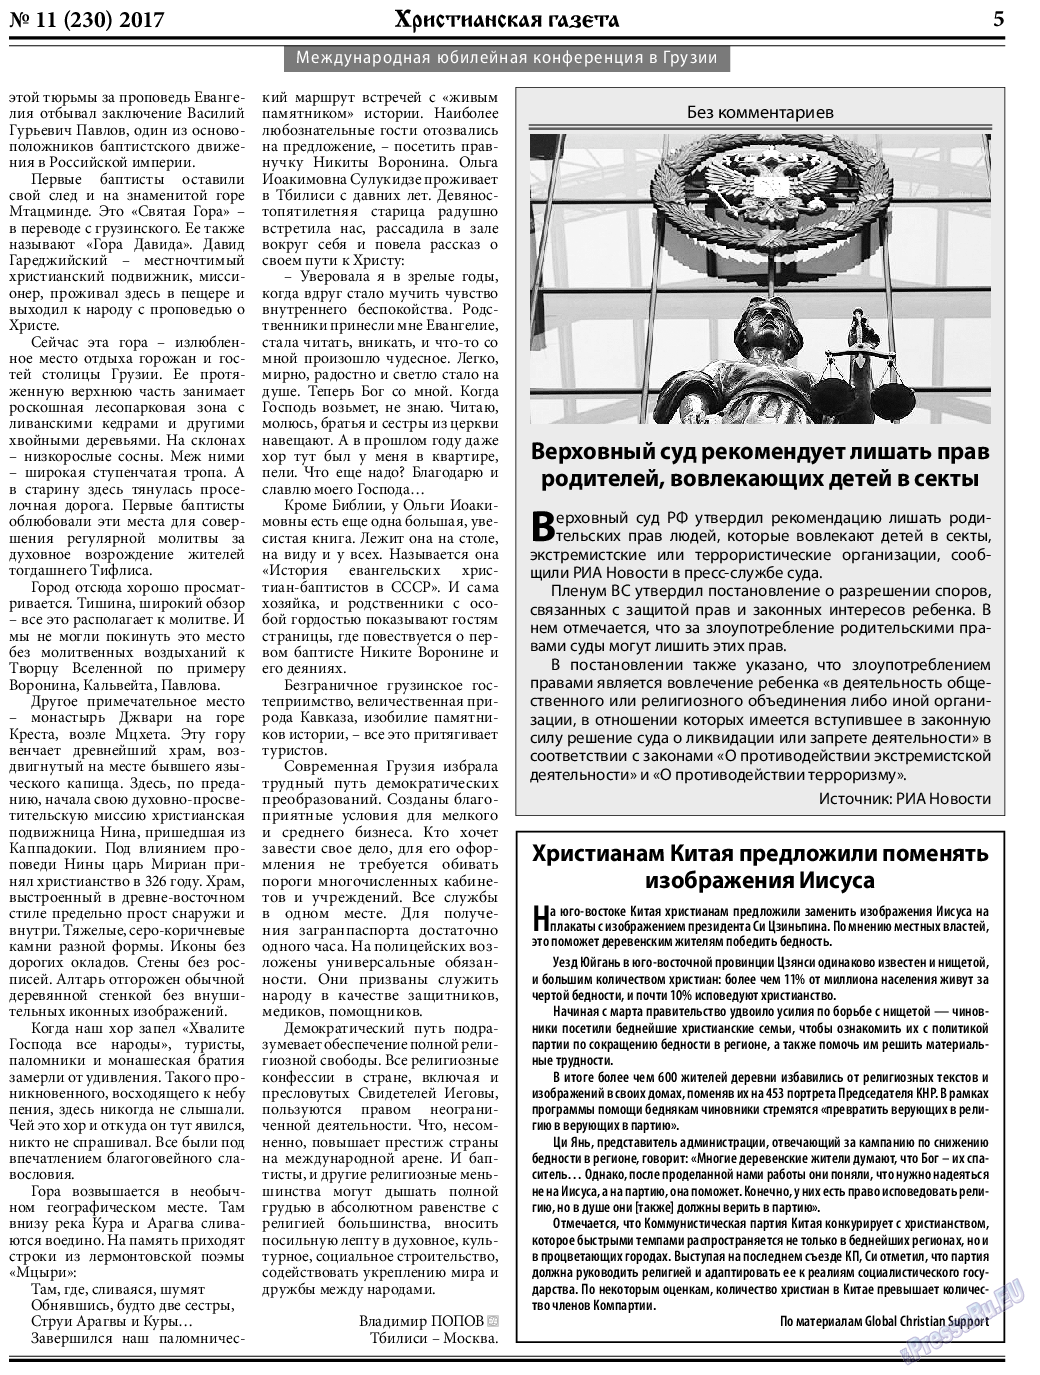 Христианская газета, газета. 2017 №11 стр.5